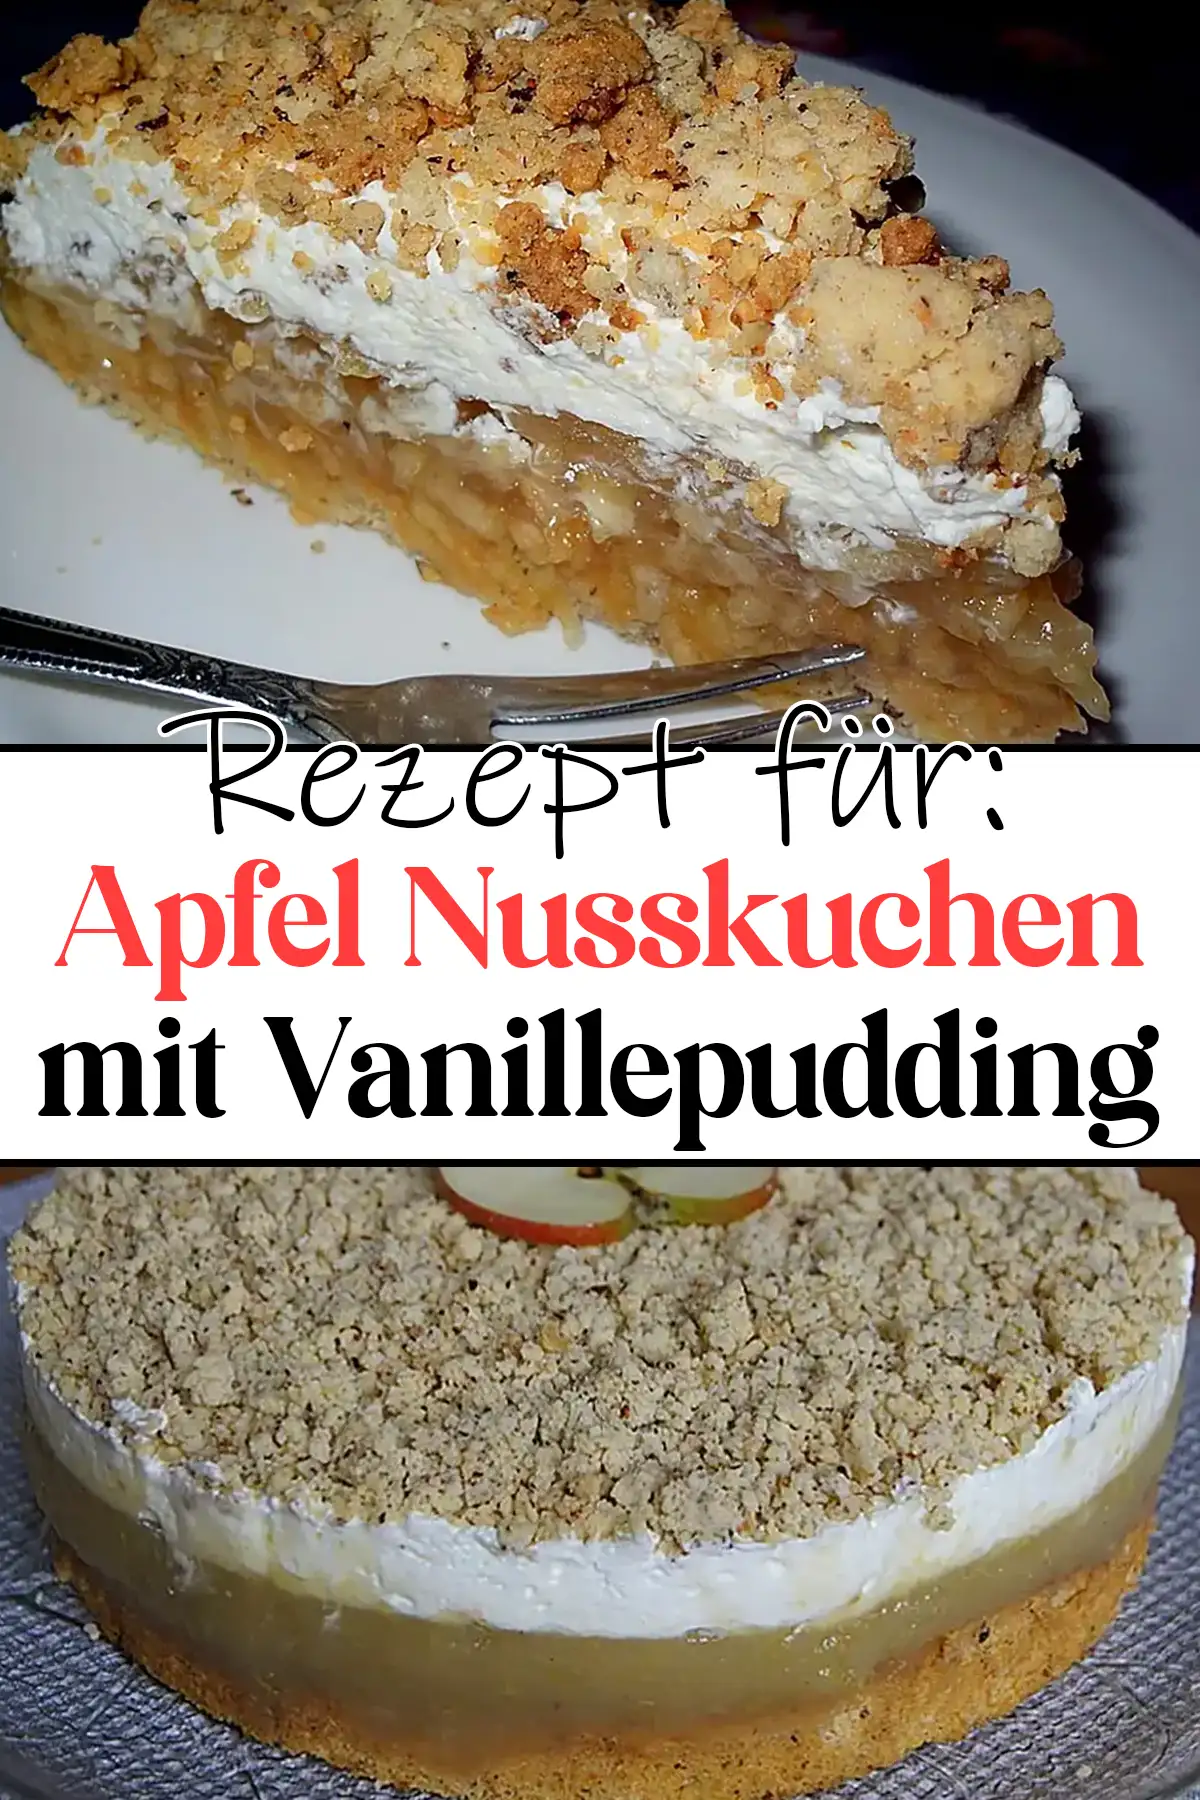 Apfeltorte - Apfel Nusskuchen mit Vanillepudding Rezept